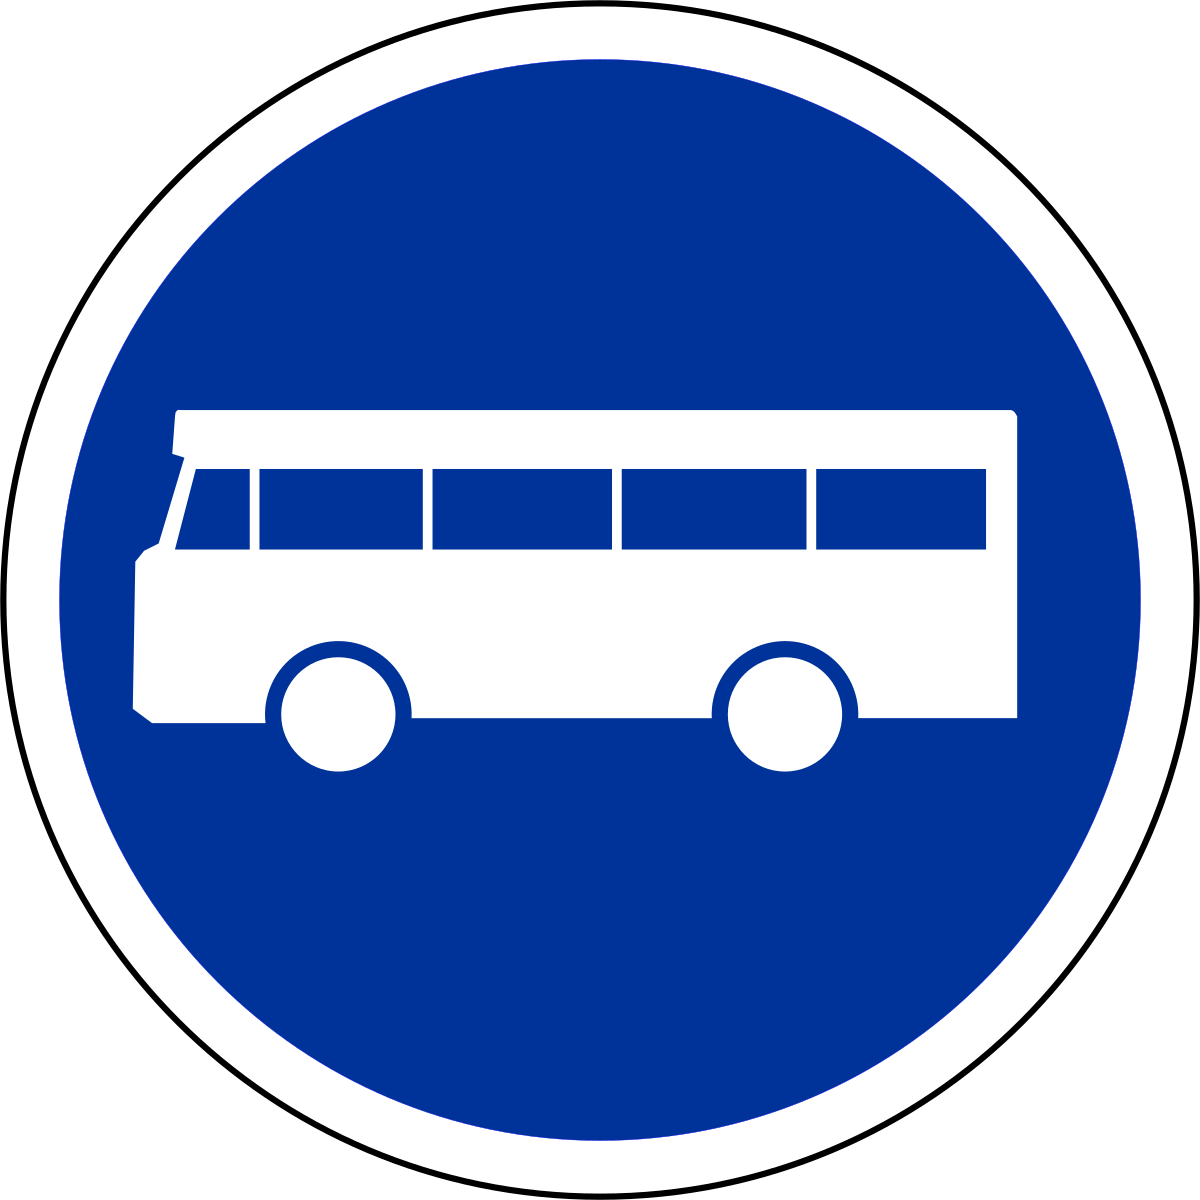 Panneau de signalisation de voie réservée aux véhicules de transports en commun en France — Wikipédia